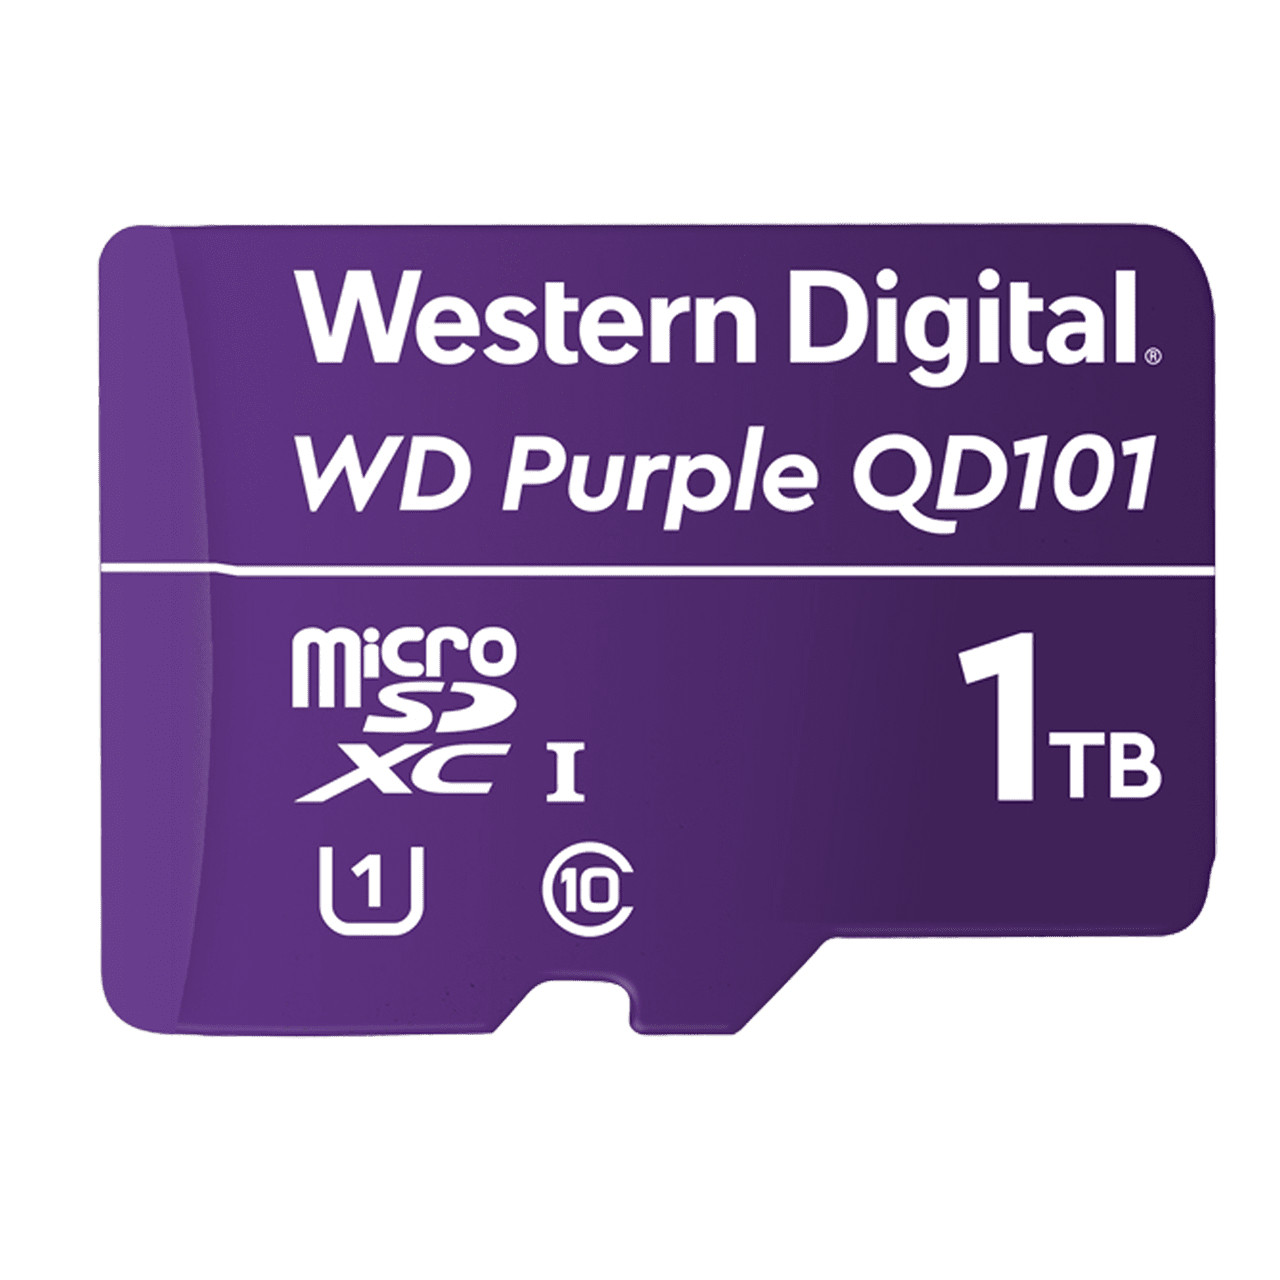 WDD100T1P0C | Western Digital | WD Purple SC QD101 1000 GB MicroSDXC UHS-I